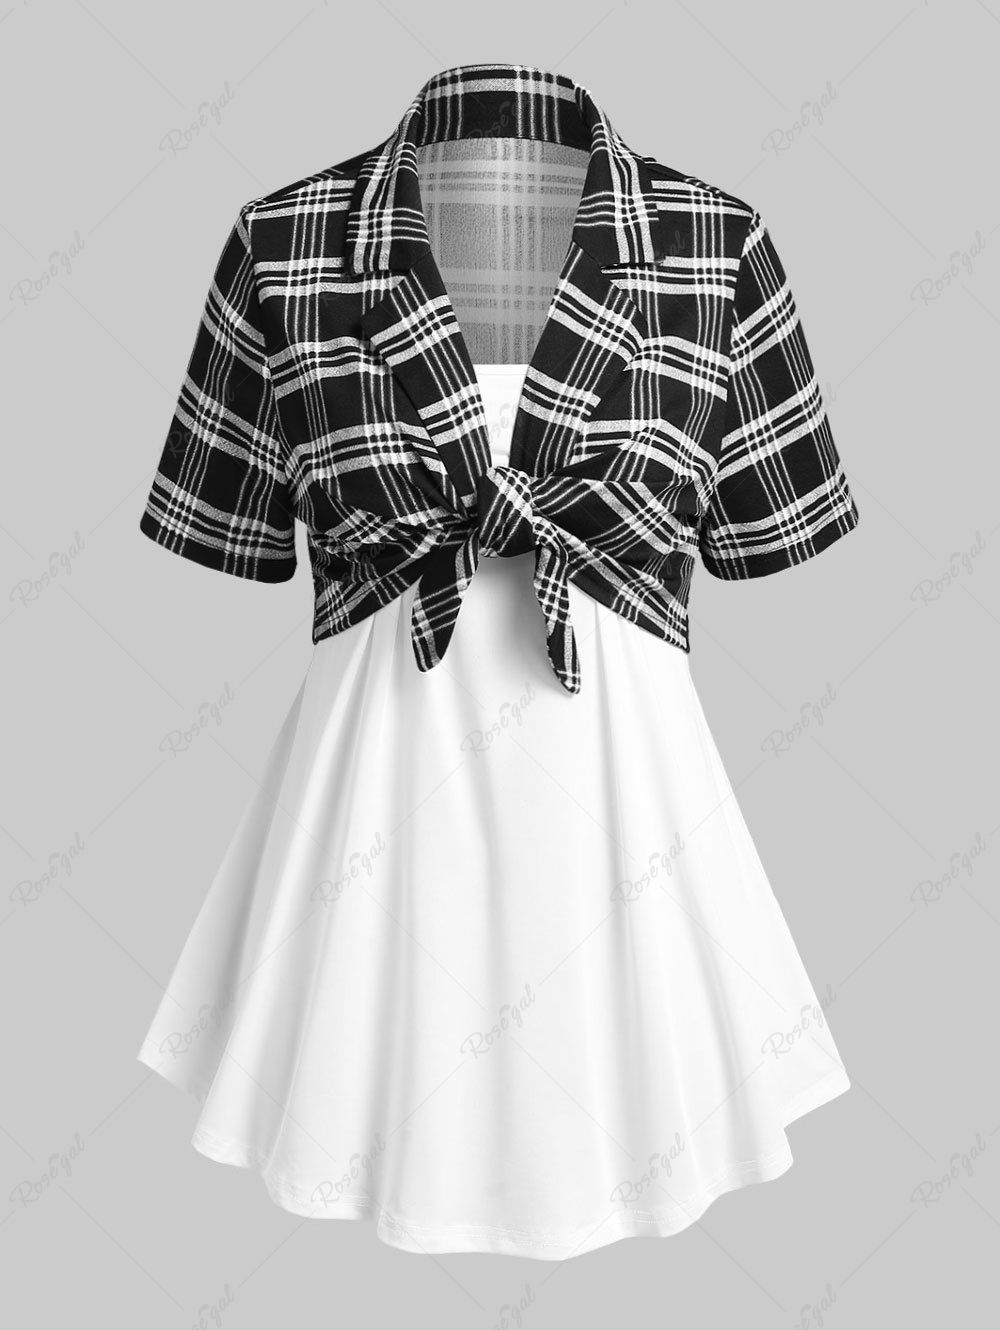 Outfit Plus Size & Curve Lapel Front Tie Plaid Top and Camisole Set  